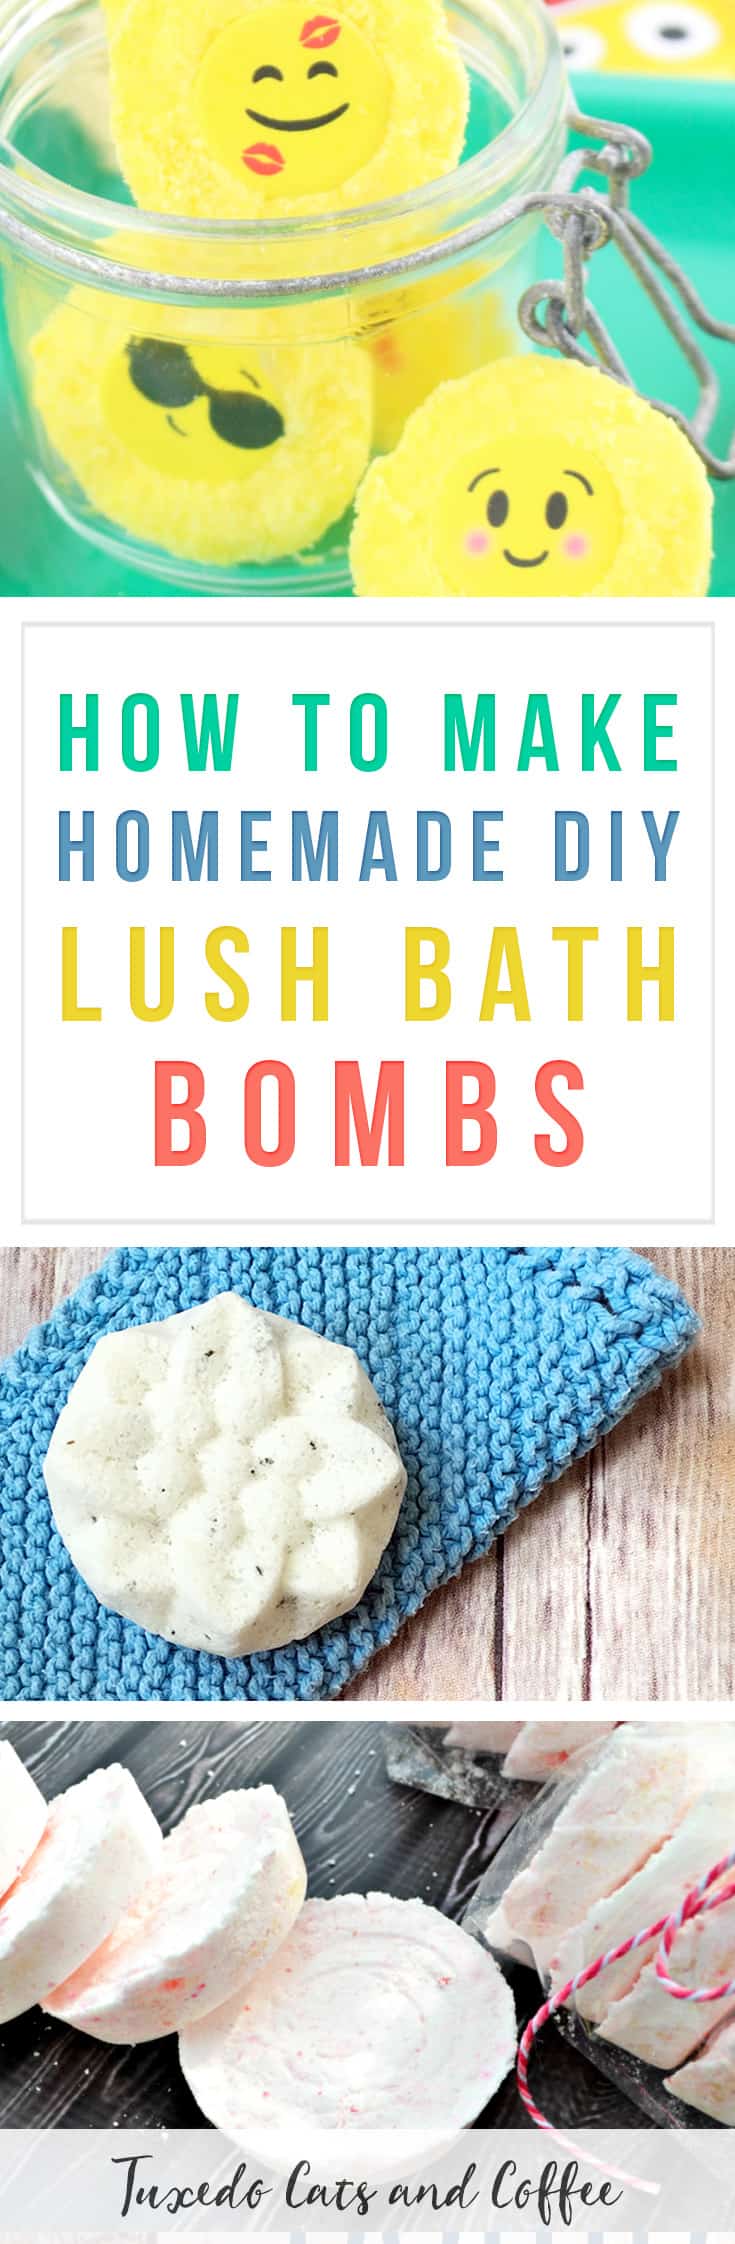 How to Make Homemade Lush Bath Bombs